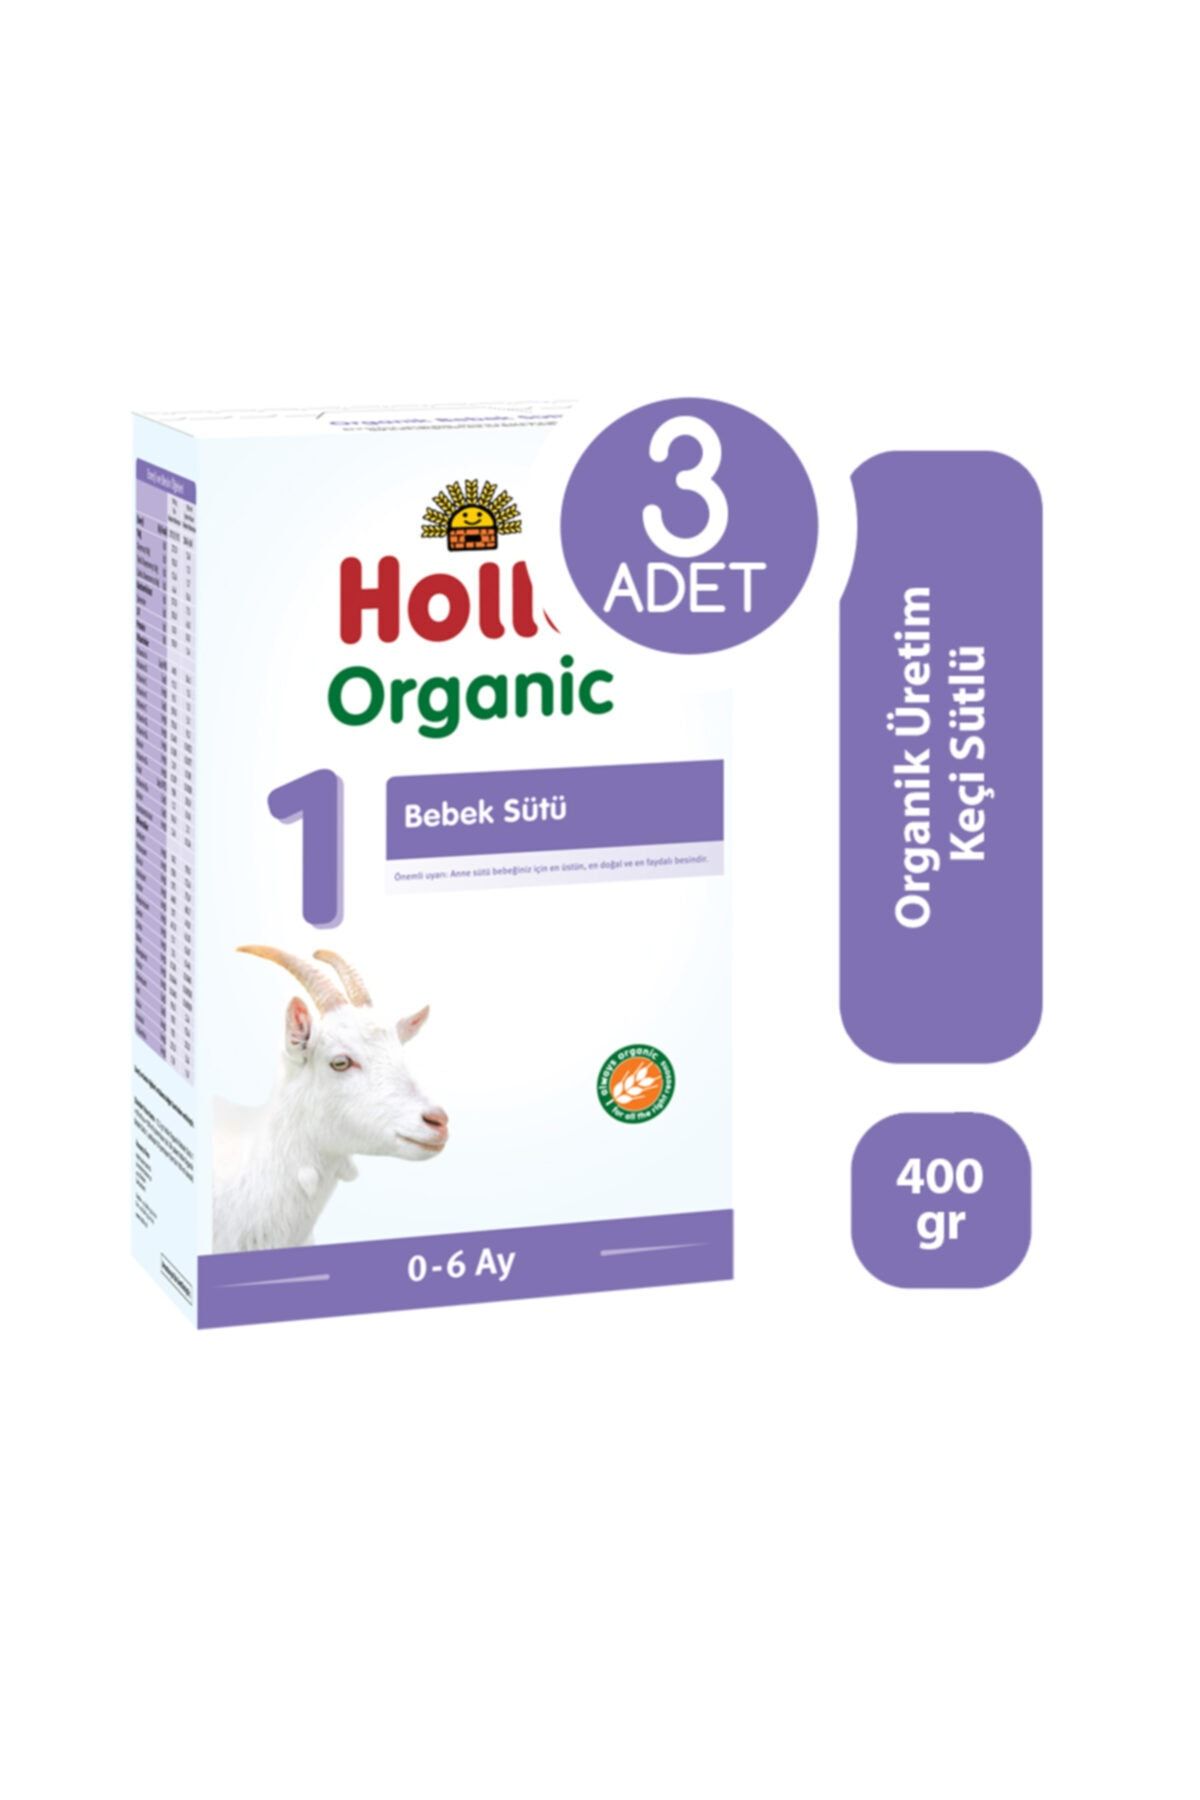 Holle Organik 1 Keçi Sütü Bebek Formülü 400 Gr - 3'lü Paket